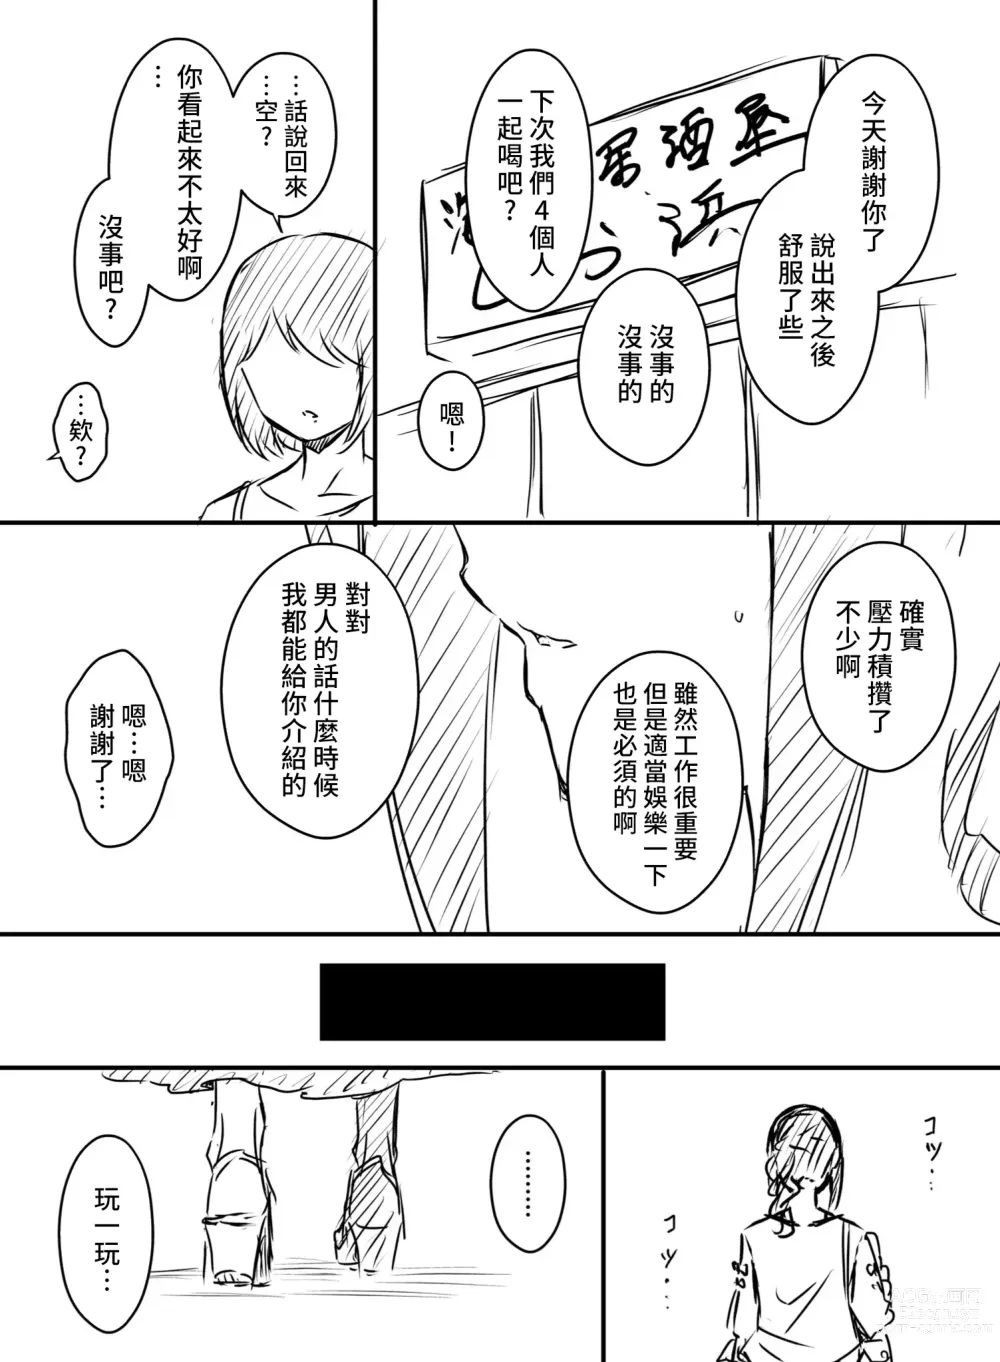 Page 130 of doujinshi Ura Kenshuu